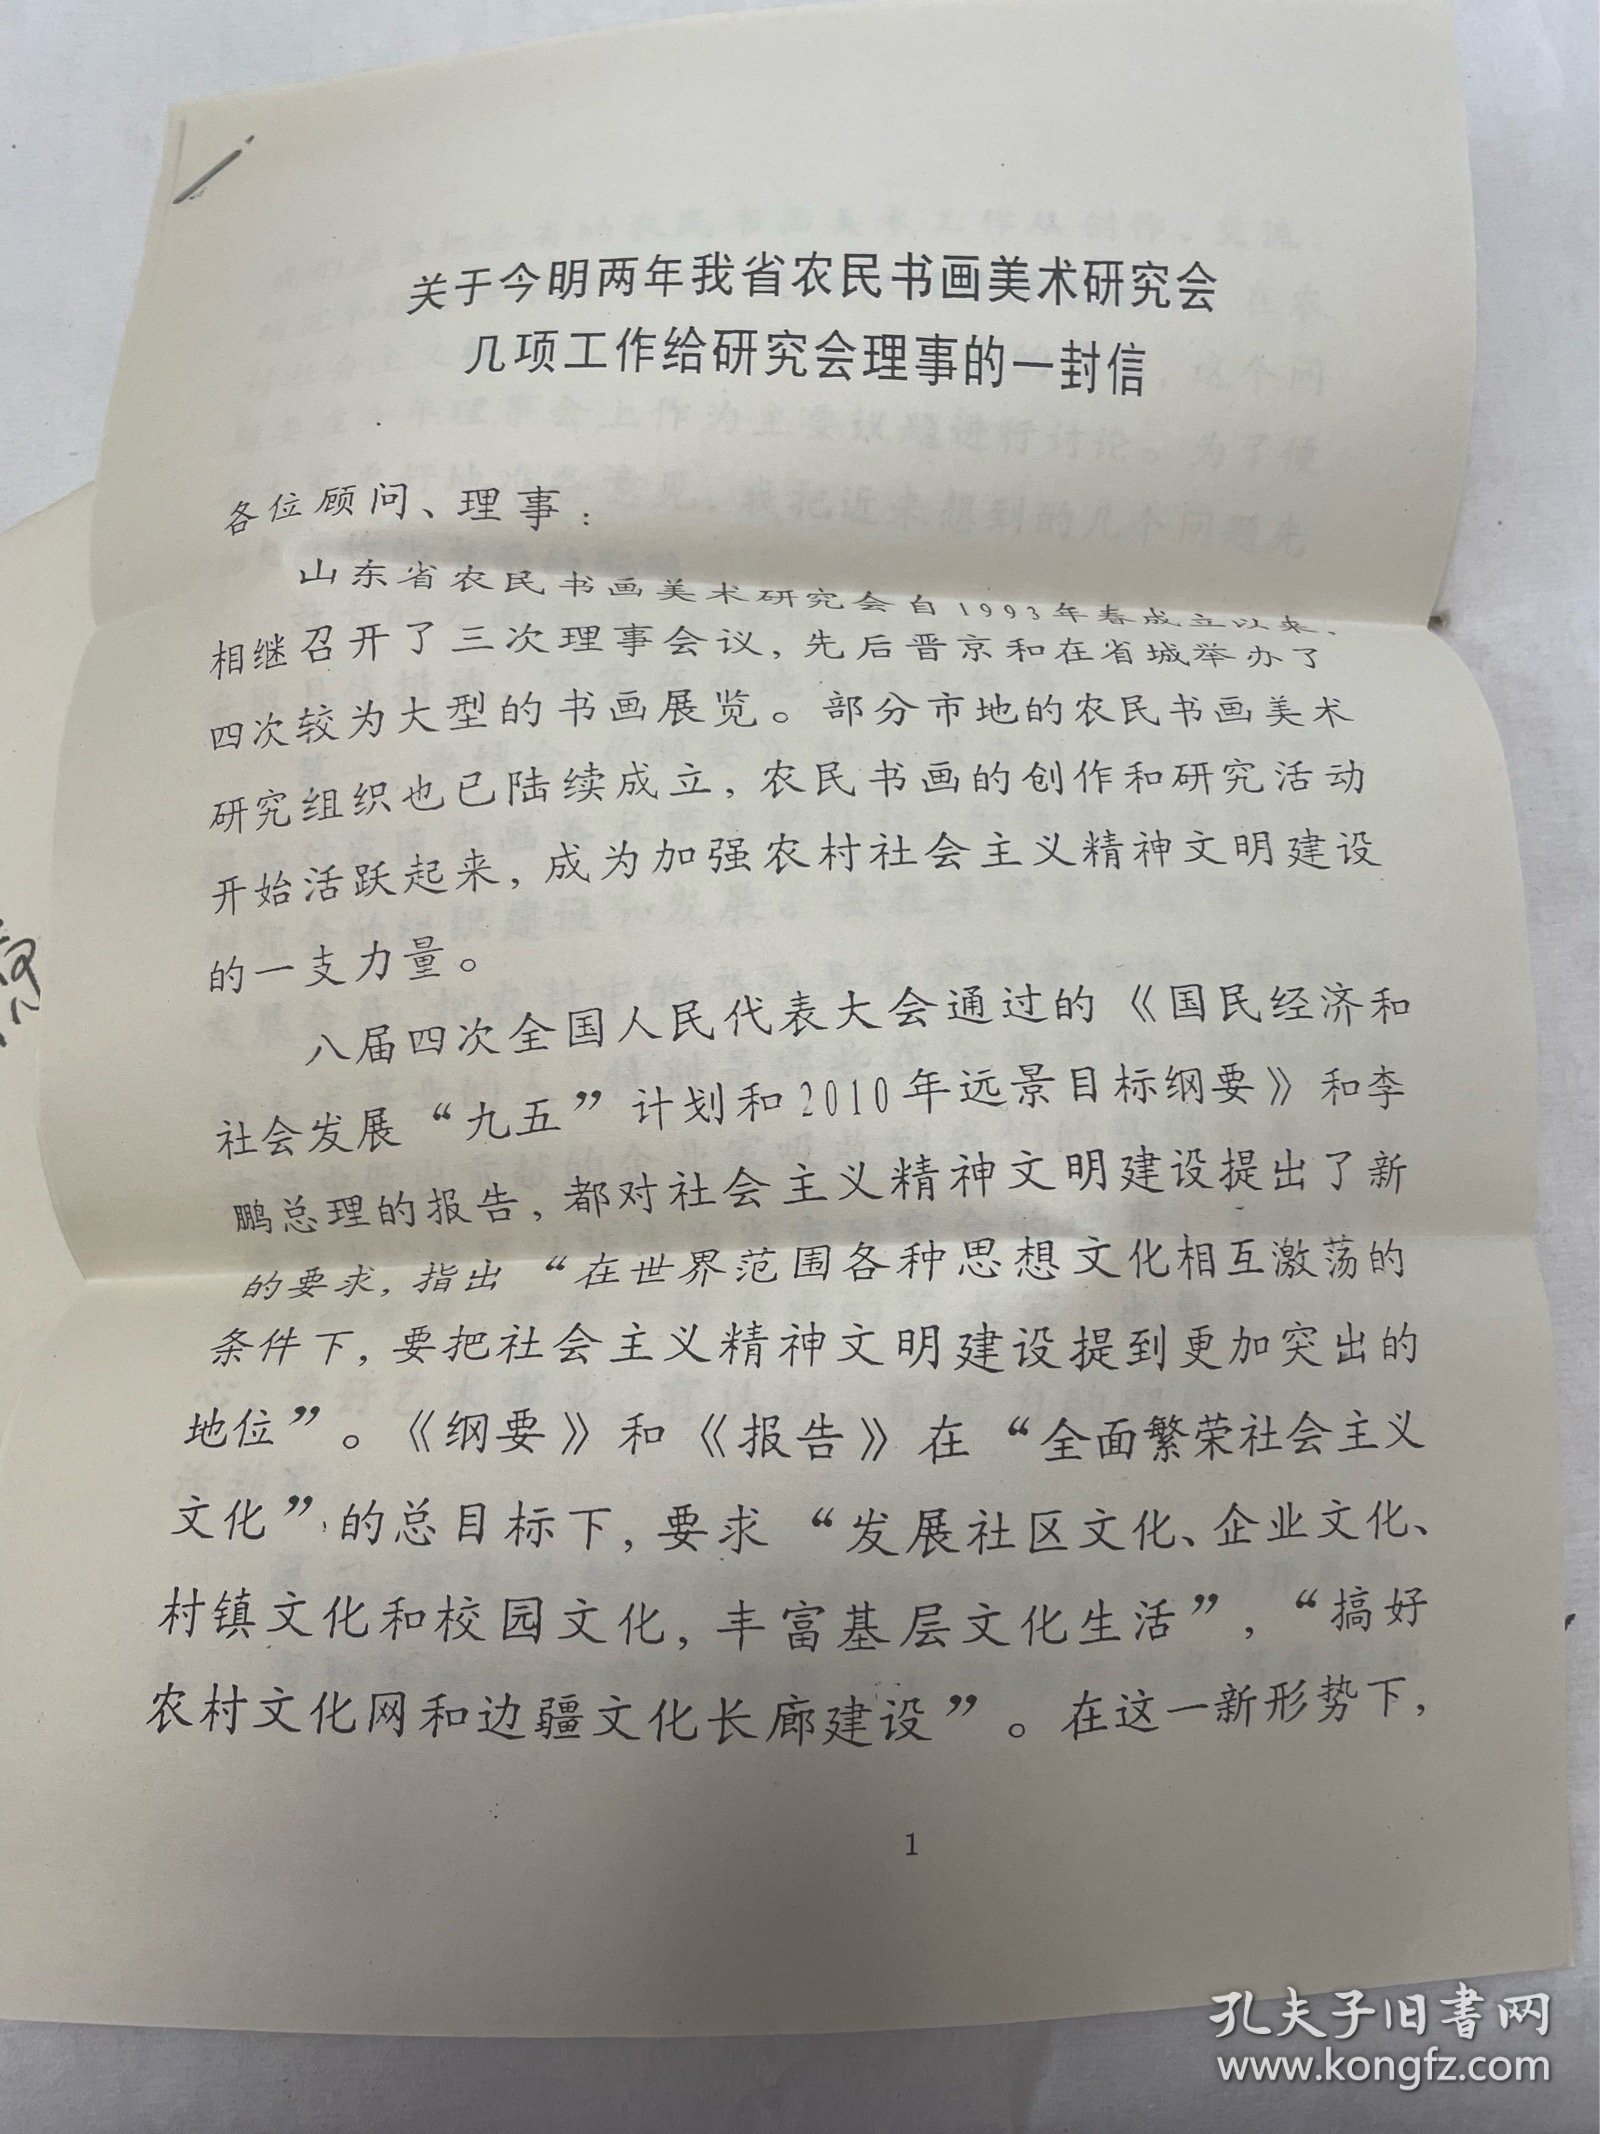 1996年苏毅然致山东画院顾问、理事的一封信打印稿